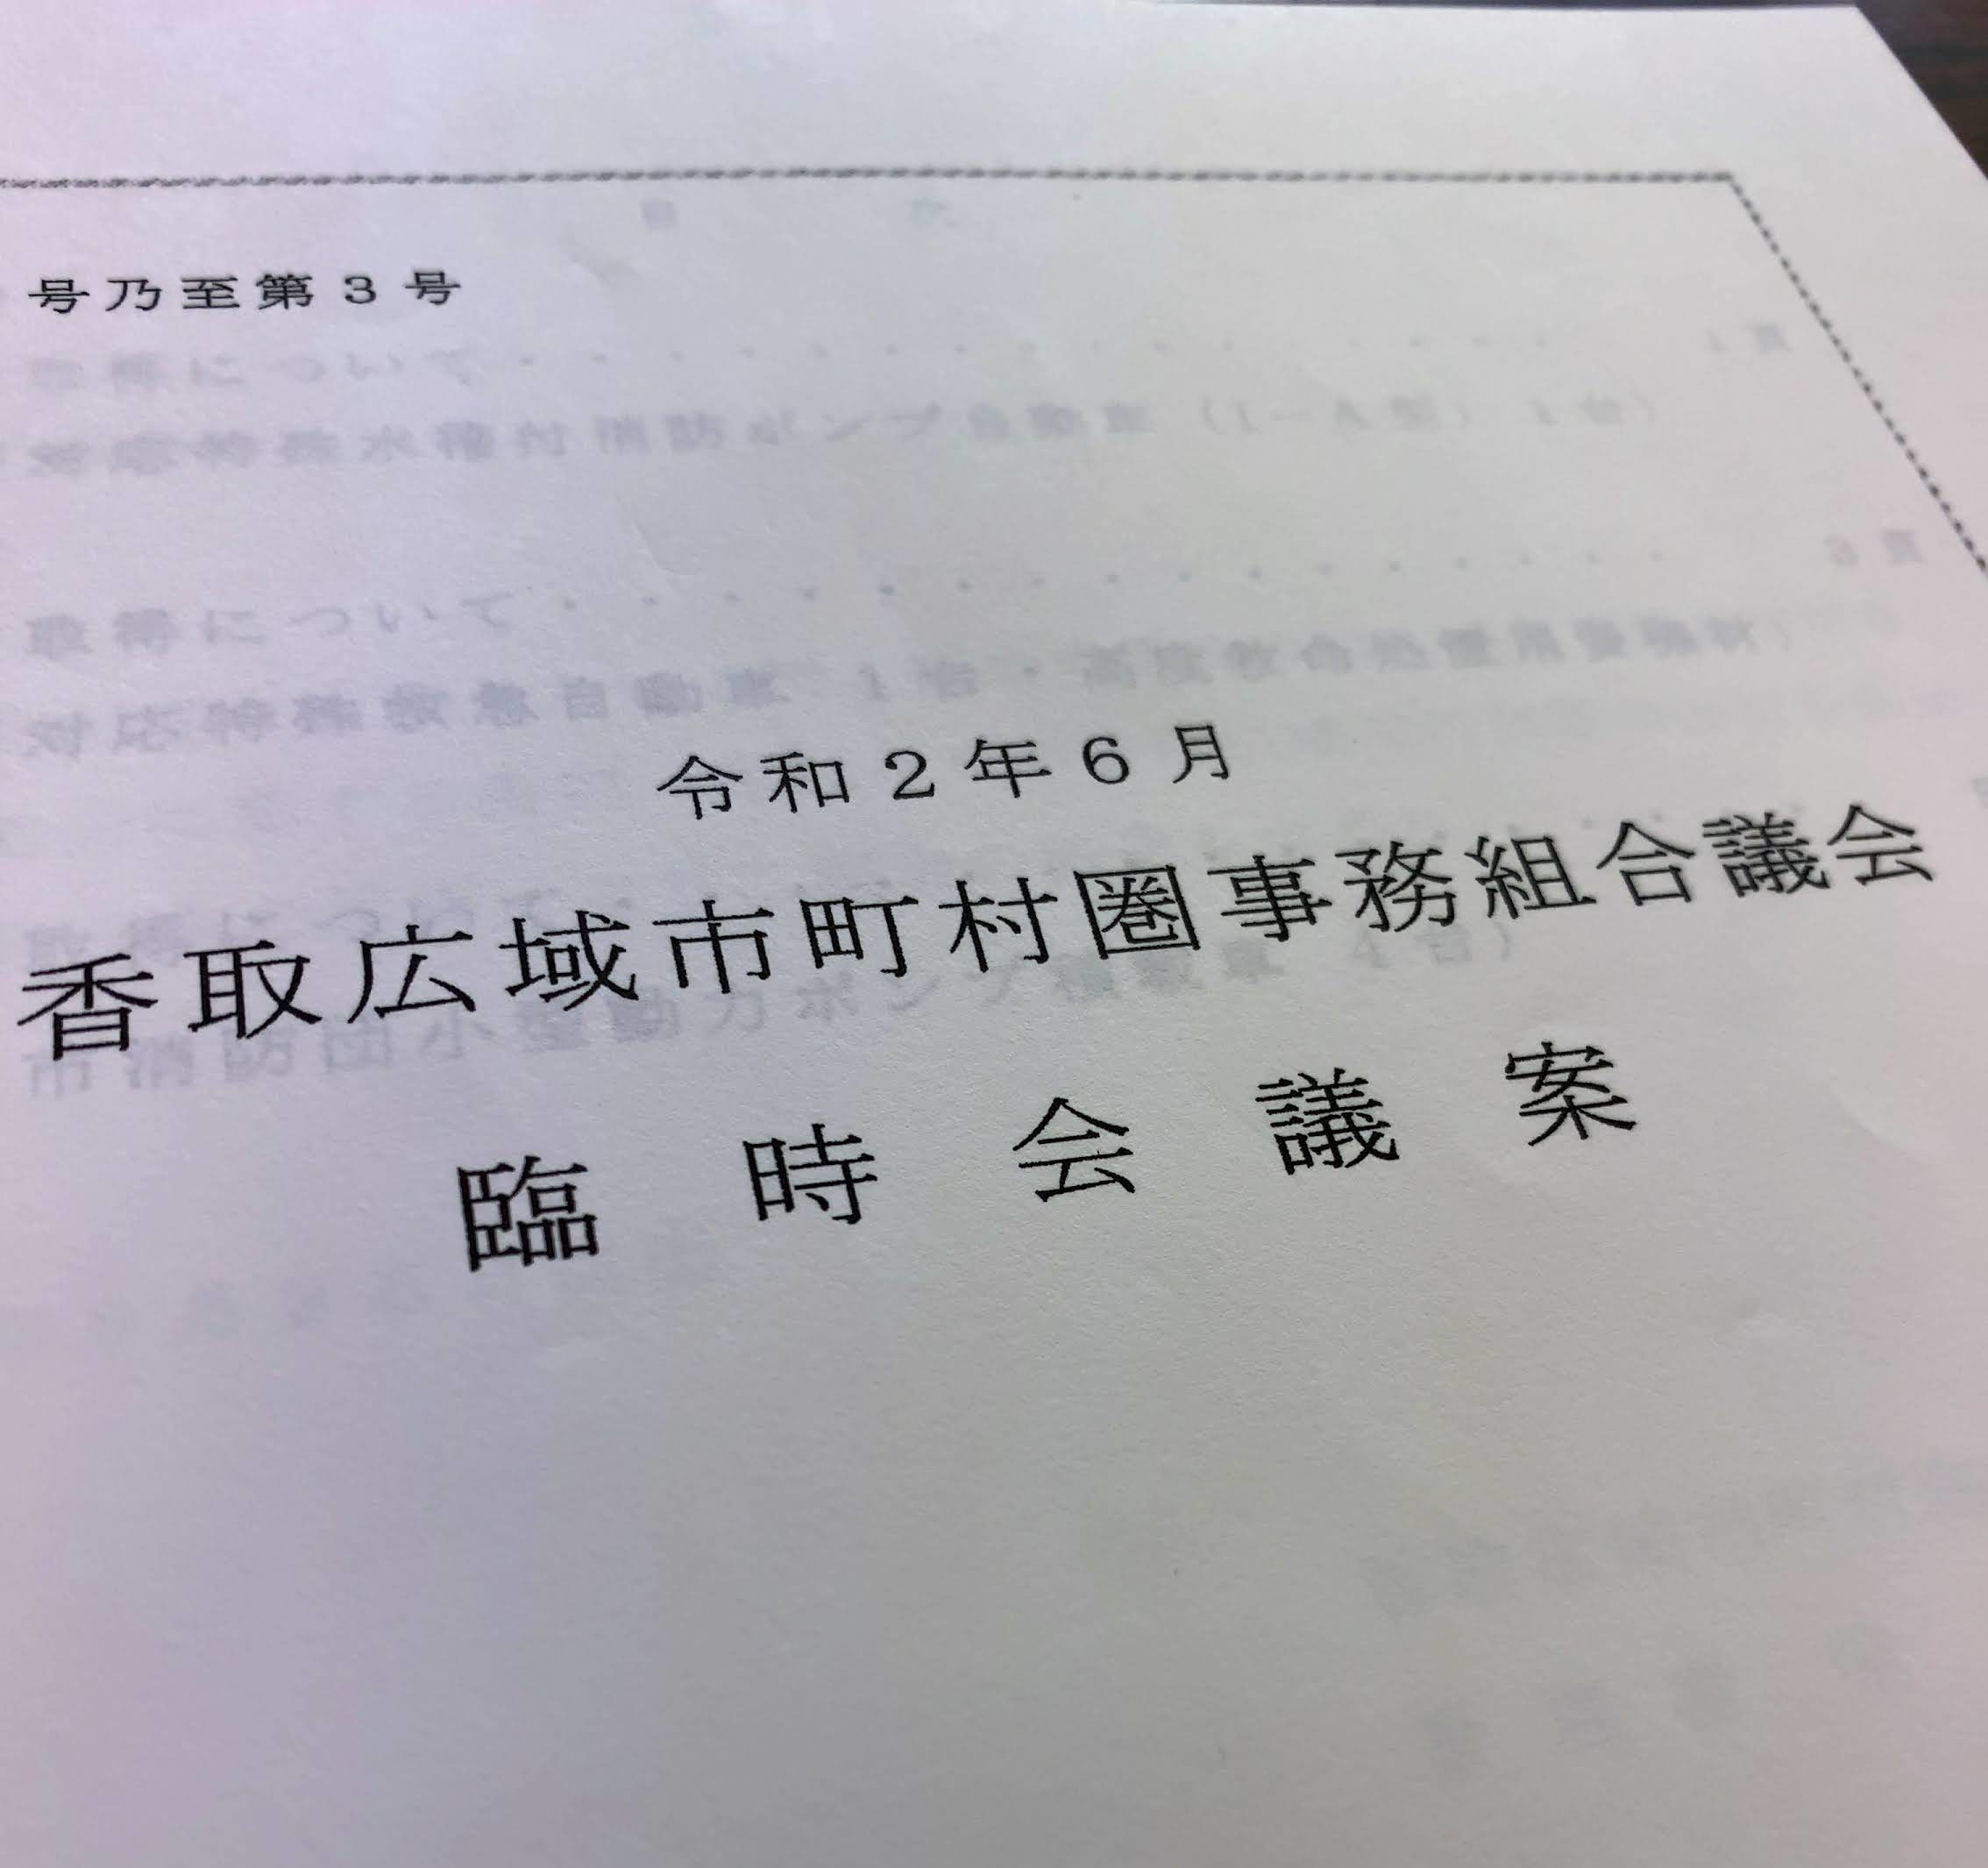 令和2年6月香取広域市町村圏事務組合議会臨時会